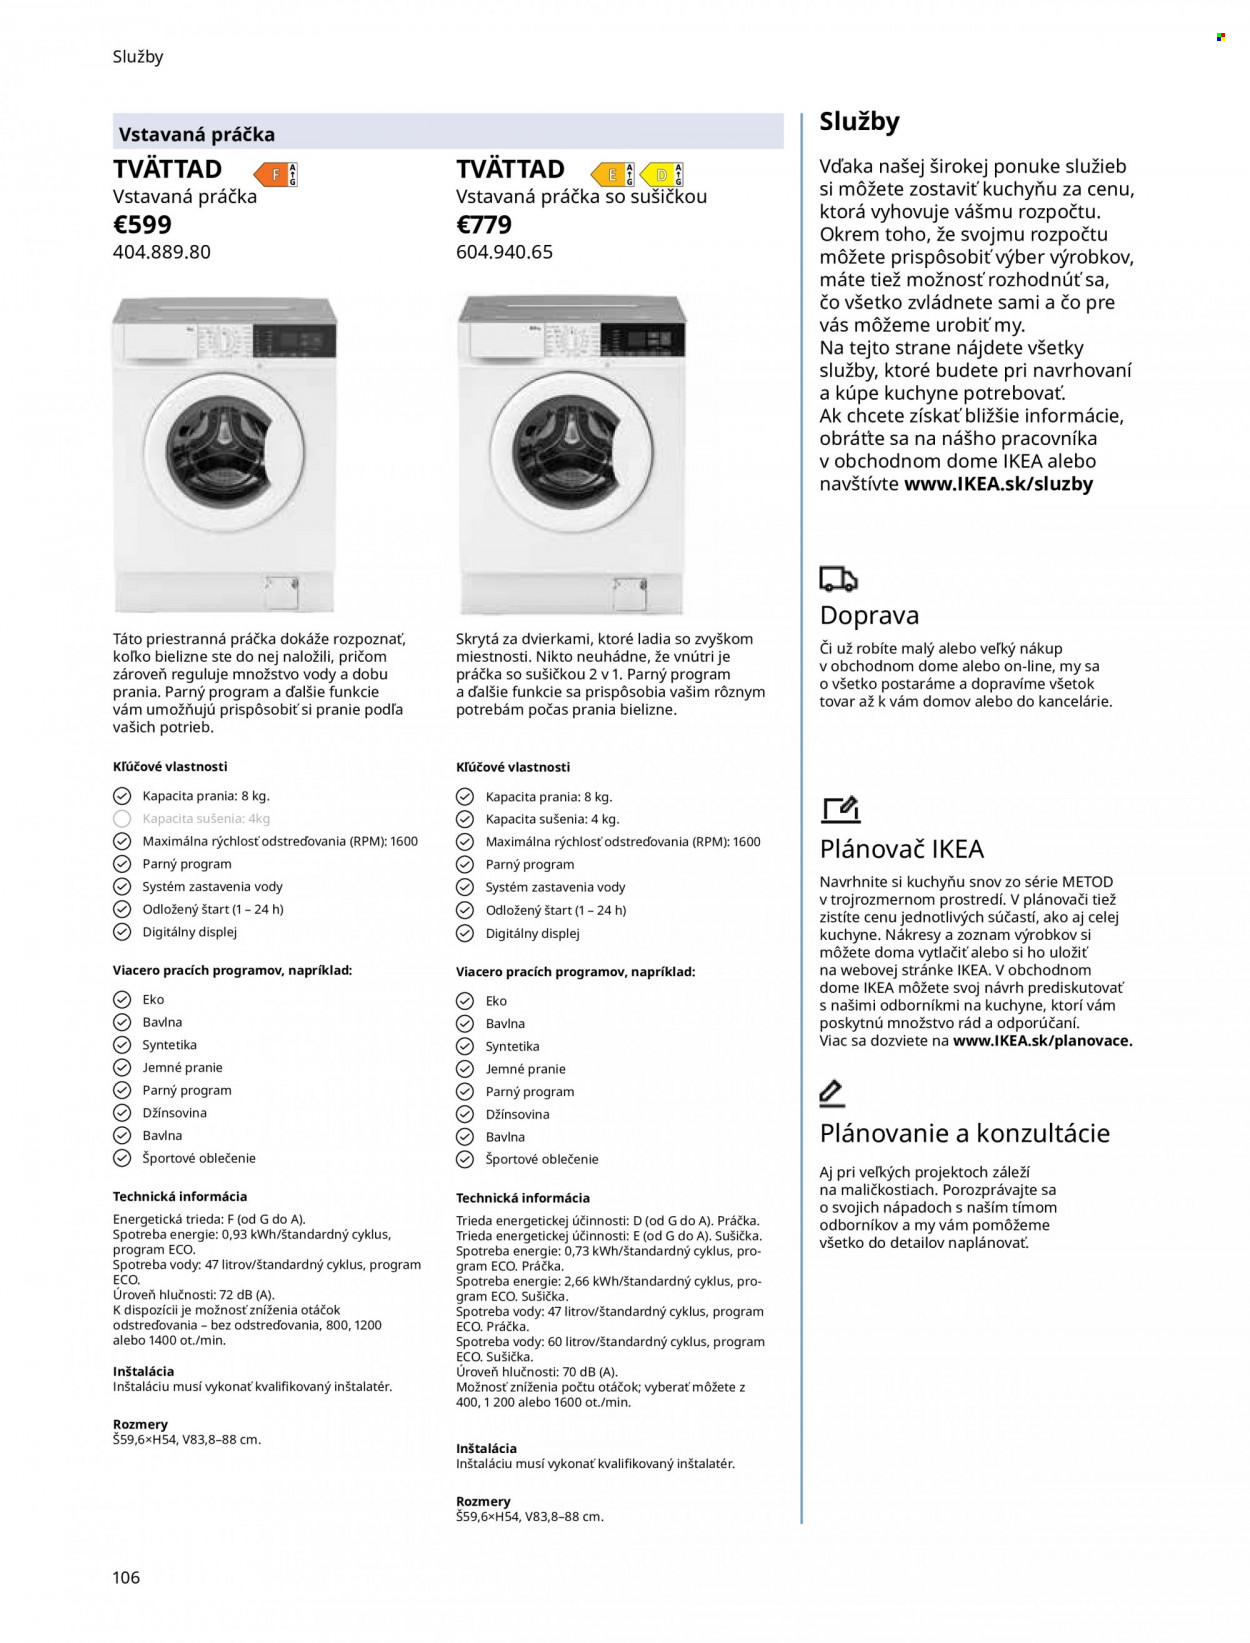 Leták IKEA - Produkty v akcii - práčka, práčka so sušičkou, sušička, Metod. Strana 106.